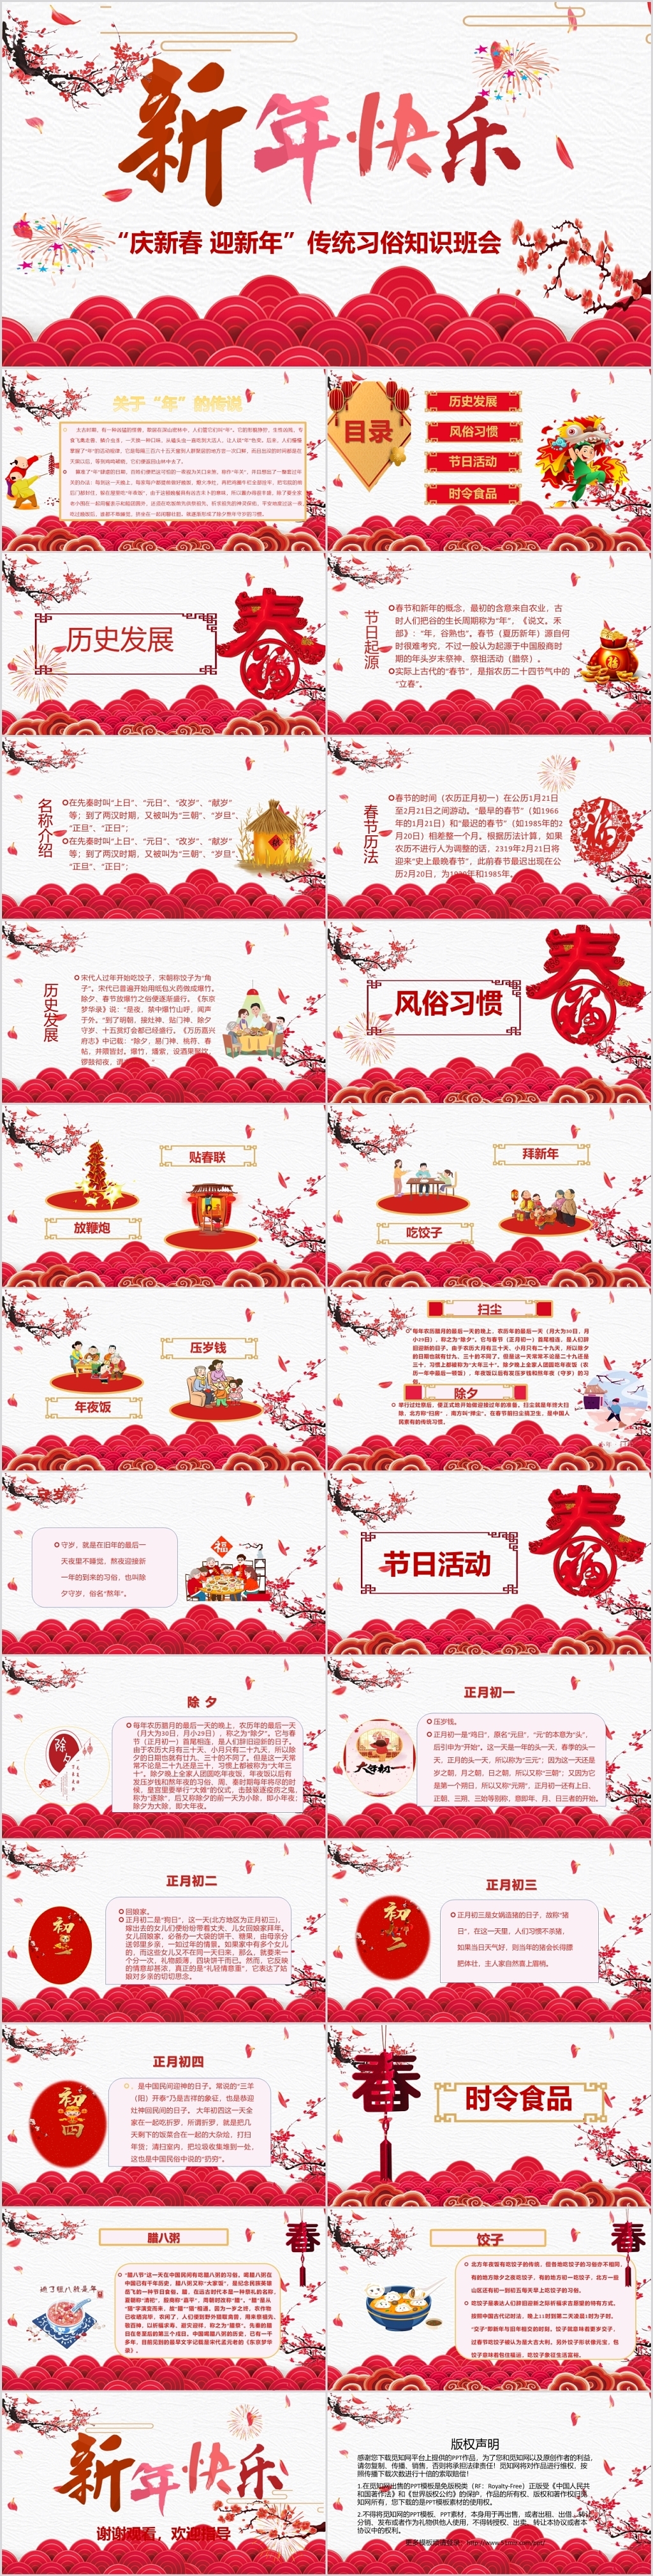 中国风中国传统节日春节新年快乐PPT模板